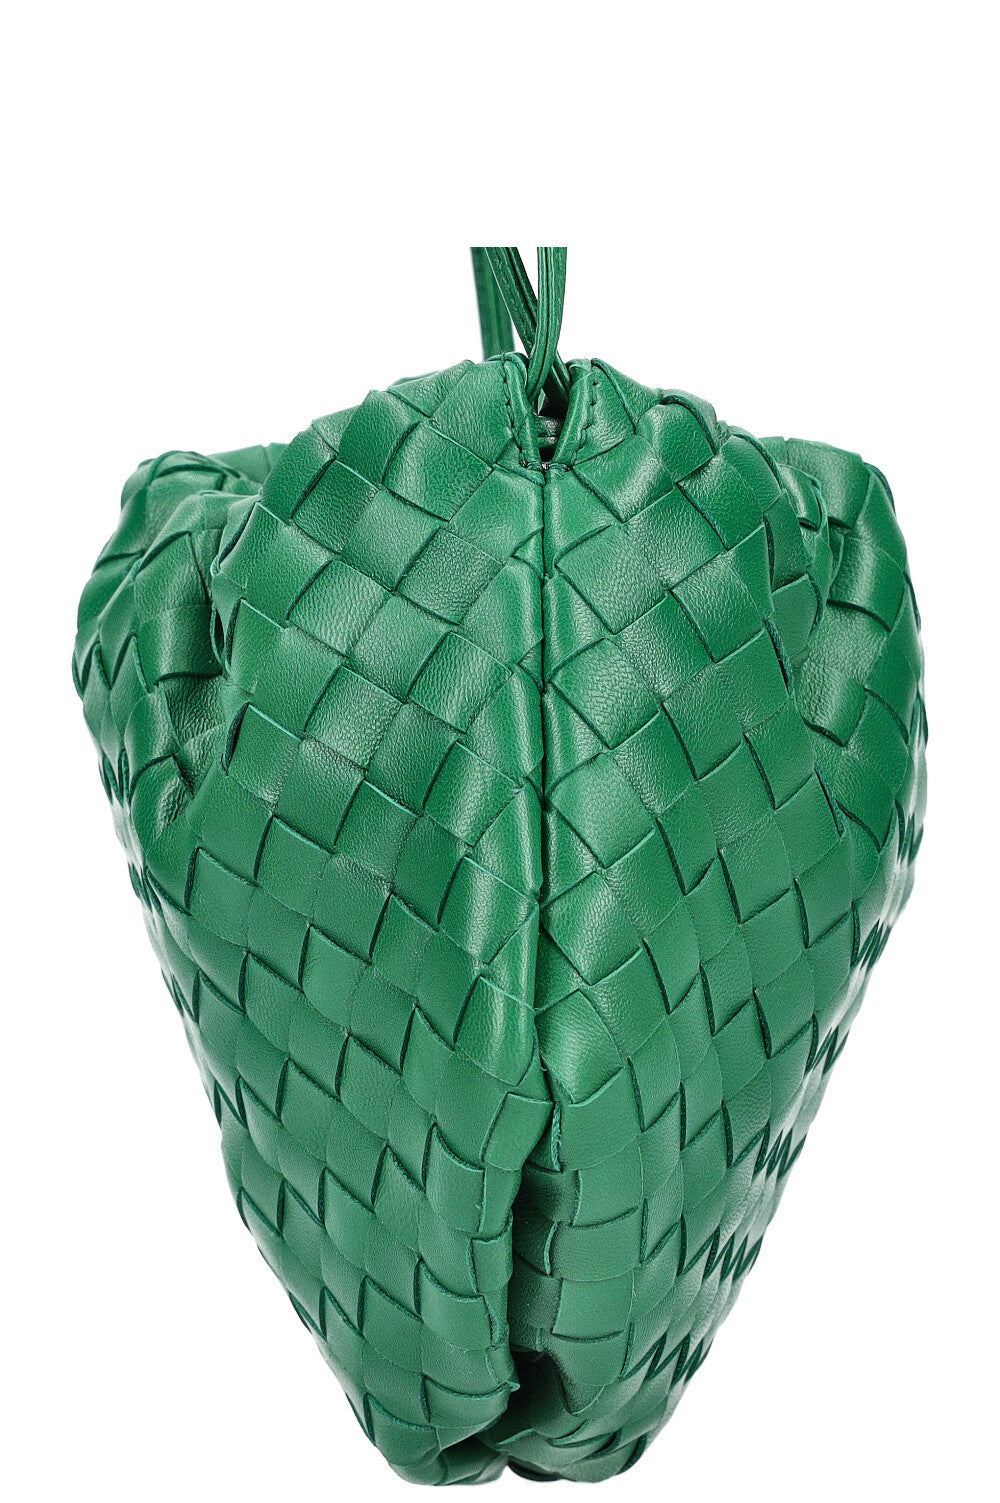 BOTTEGA VENETA The Bulb Bag Mini Green 2020